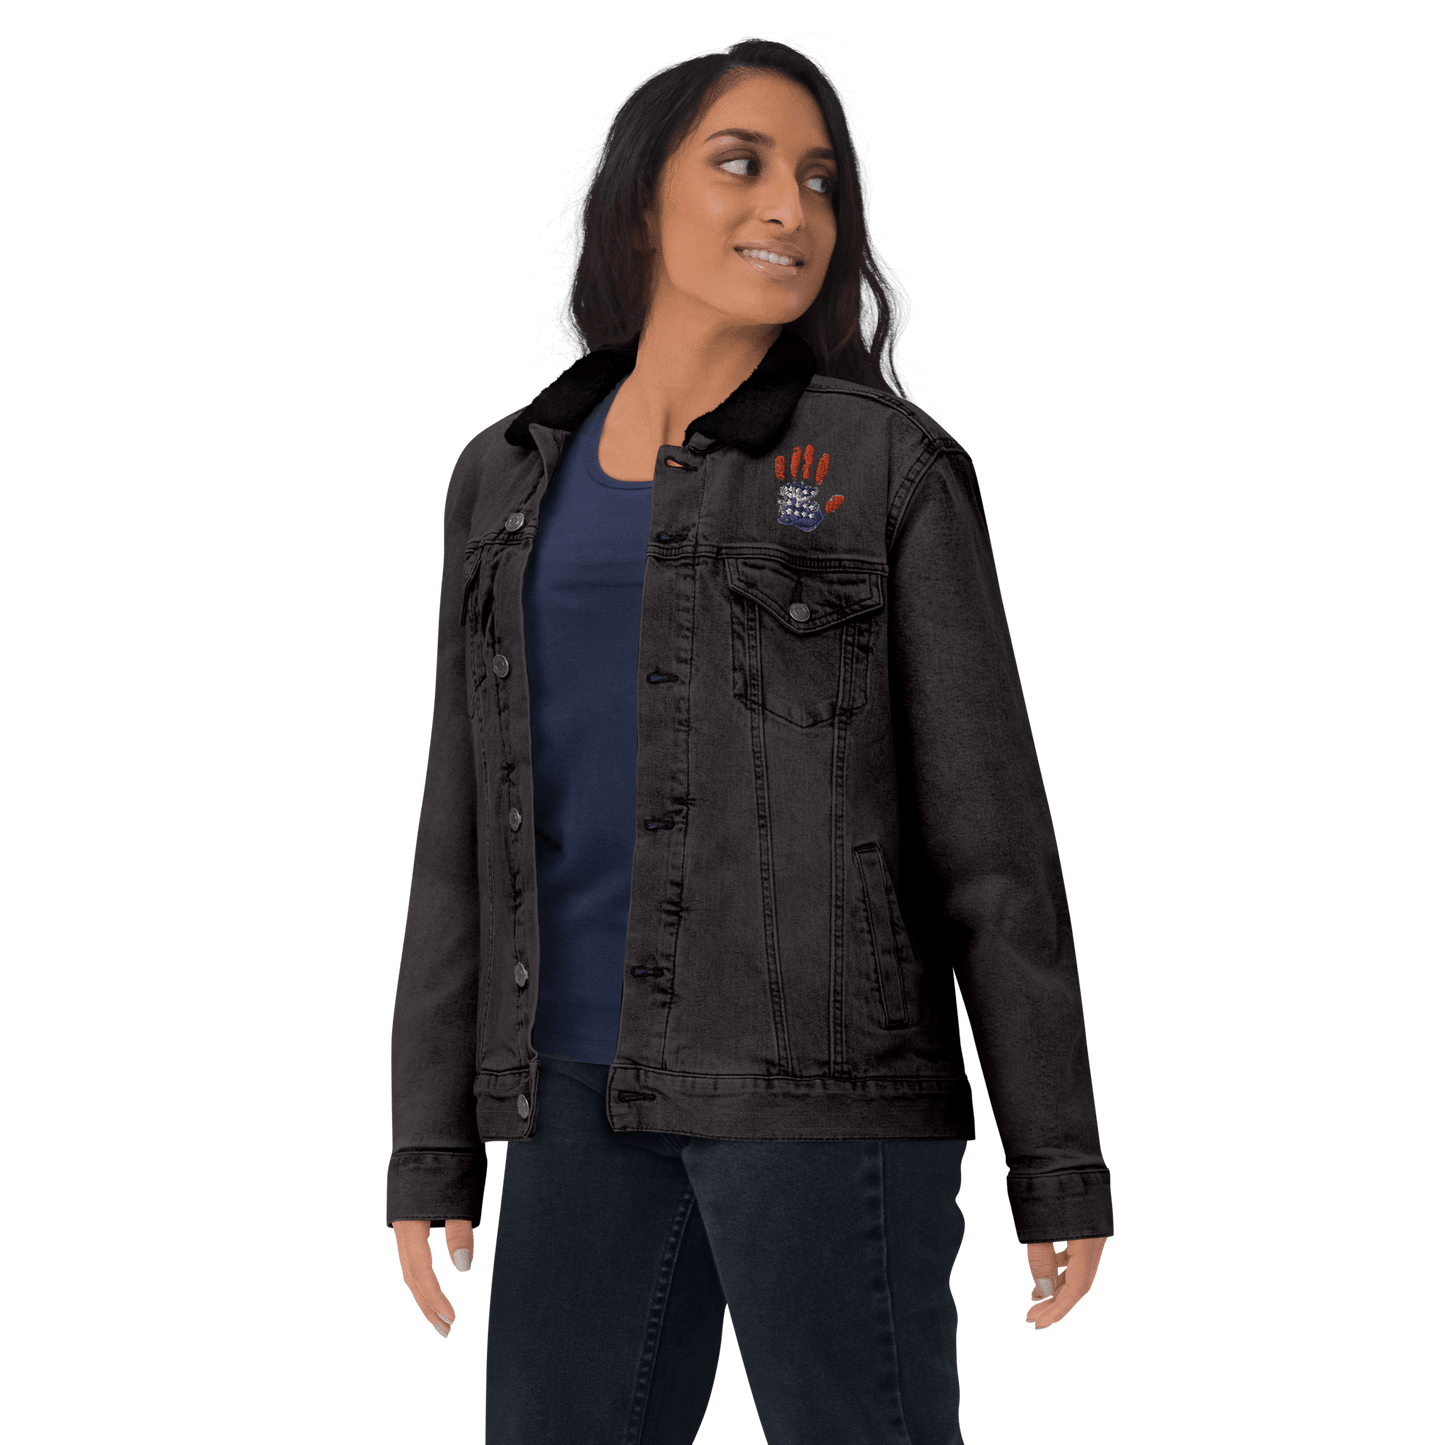 Patriotic Handprint Unisex Denim Sherpa Jacket - L & M Kee, LLC